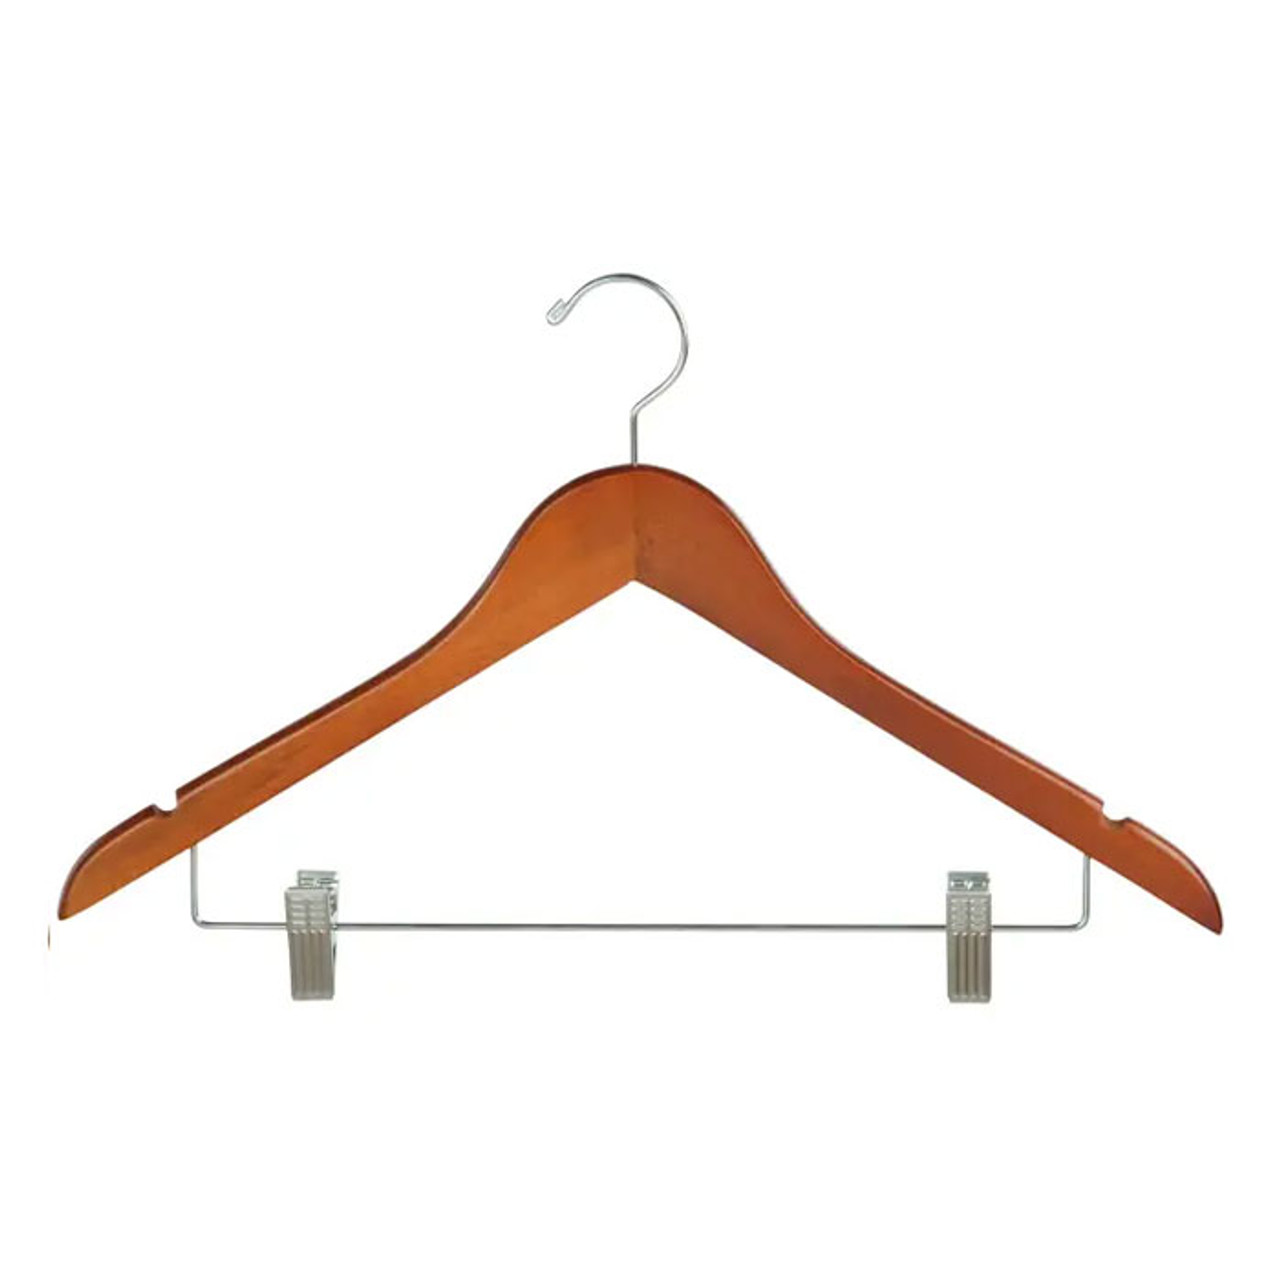 17" Teak Wooden Suit Hanger with Clips